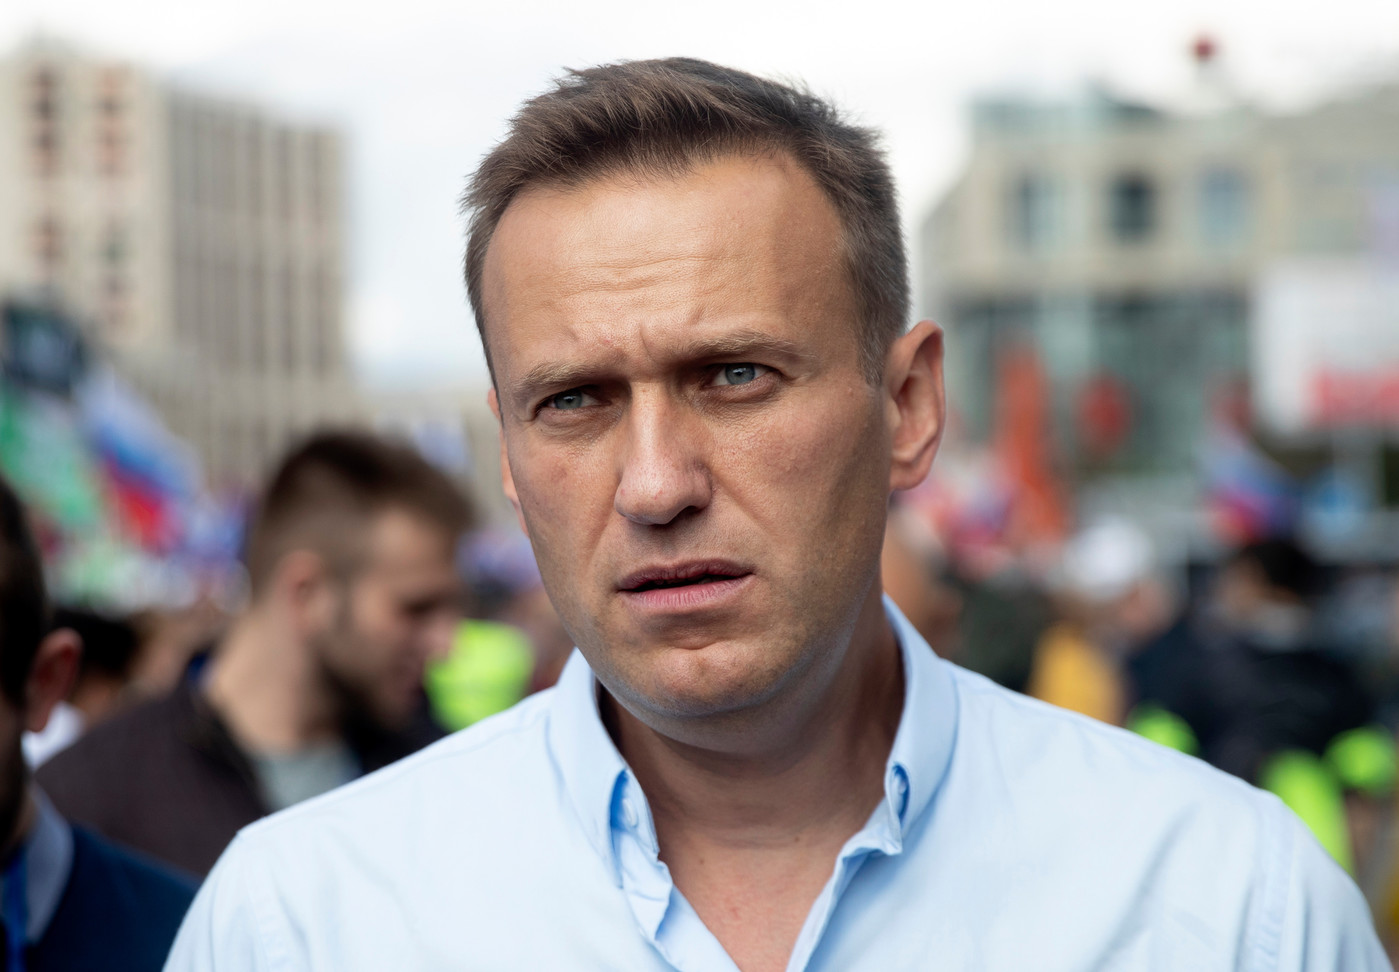 Critique Feroce Kremlin Alexei Navalny Place Artificiel Lhopital 1 Domsk Transporte Inconscient 0 1399 972